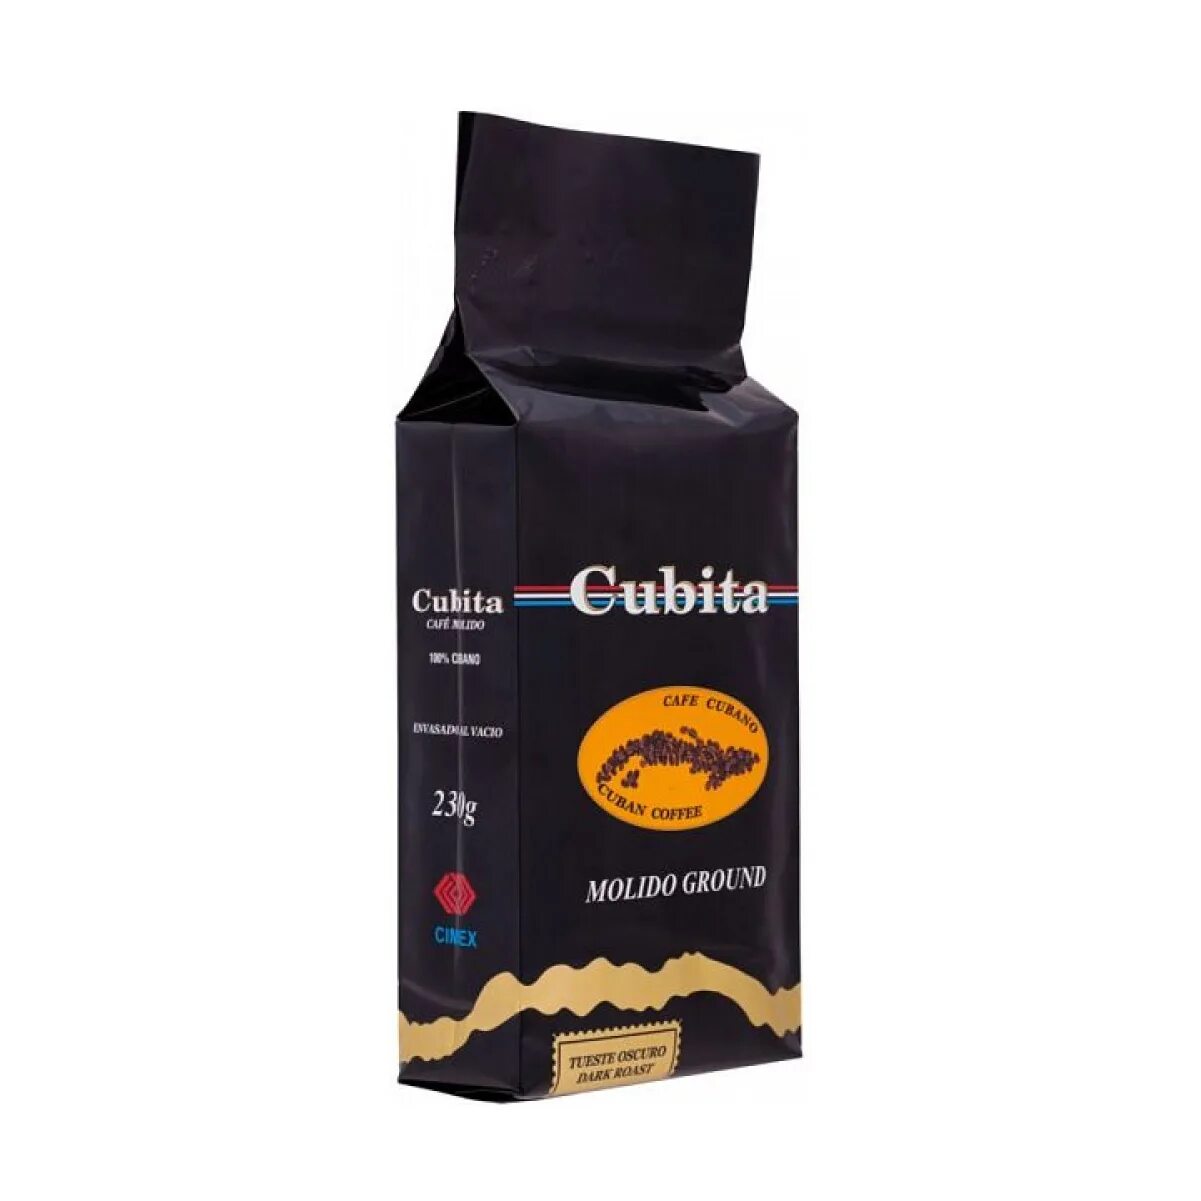 Cubita молотый (230 гр). Кубинский кофе в зернах Cubita. Кубинское кофе кубита кубинское кубита. Кубинский кофе в зернах Cubita Torrefacto.